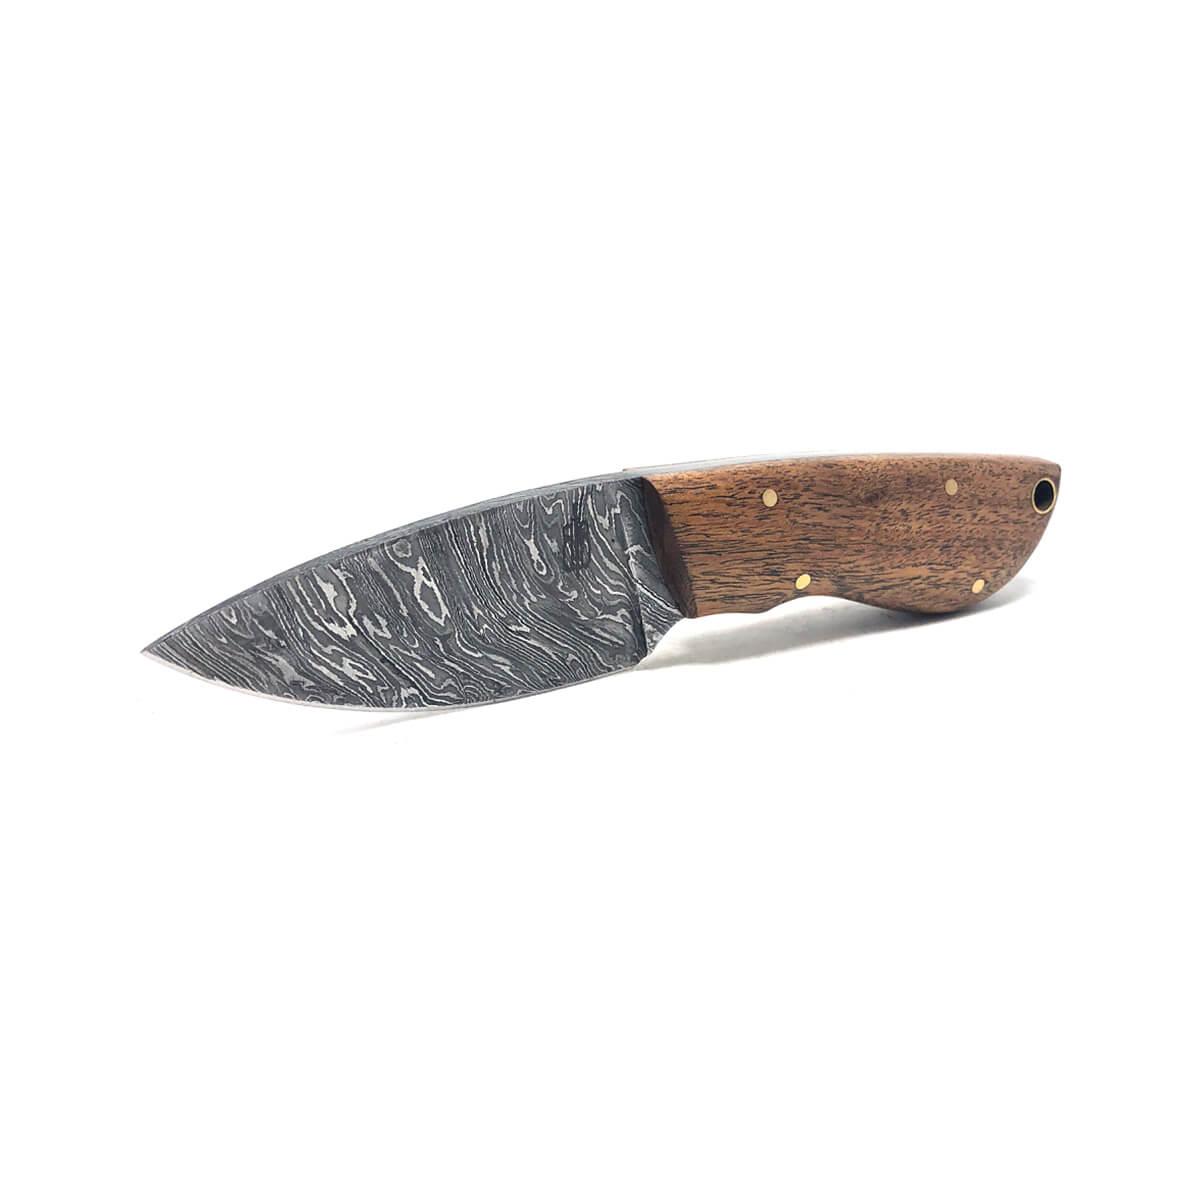  Mini Skinner Knife